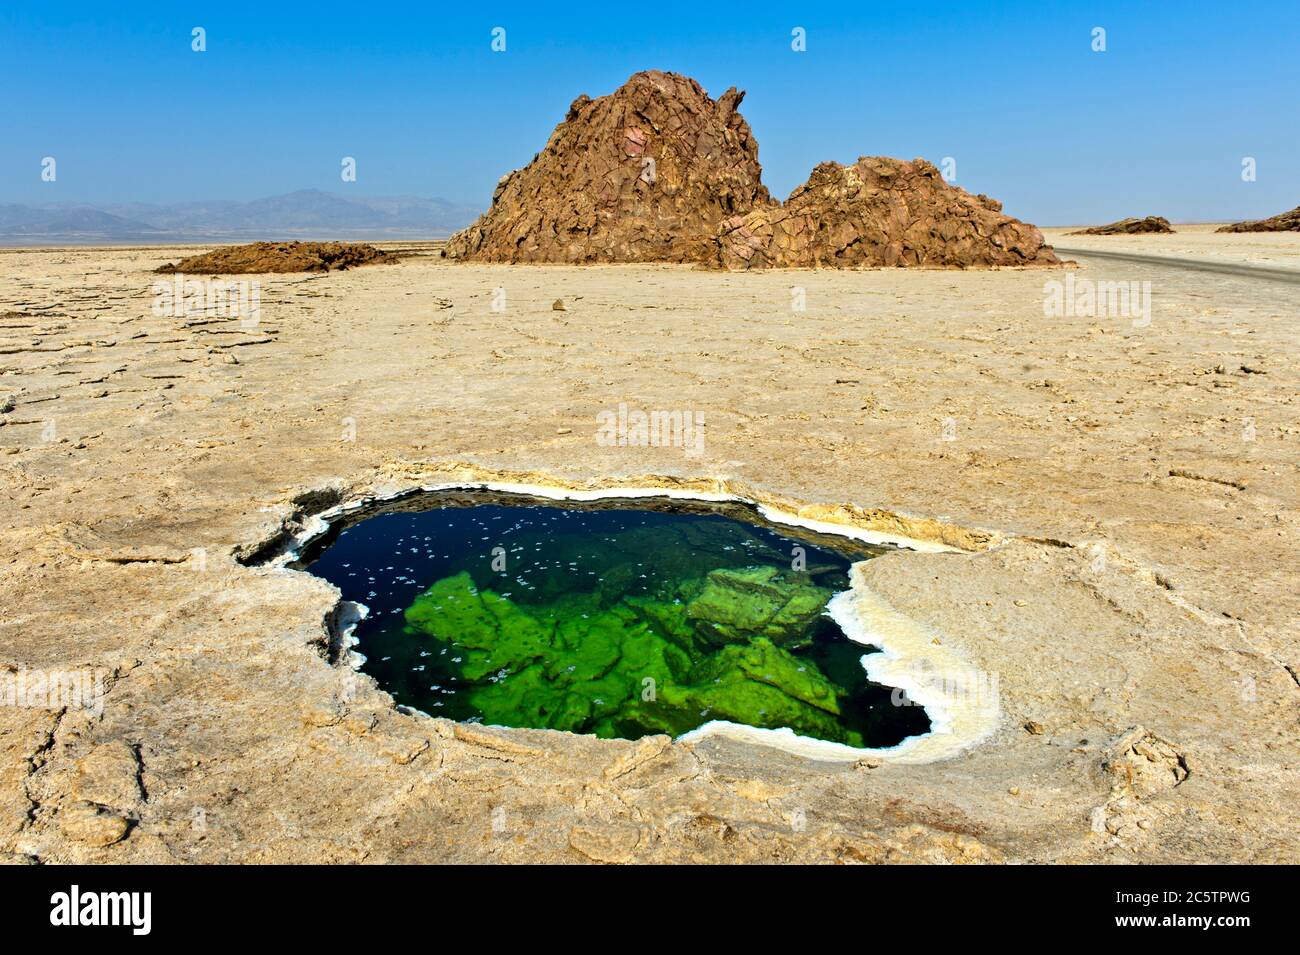 Trou d'eau avec cristaux de sel floqués dans la croûte de sel du lac Assale ou du lac Karum, zone géothermique de Dallol, dépression de Danakil Éthiopie Banque D'Images